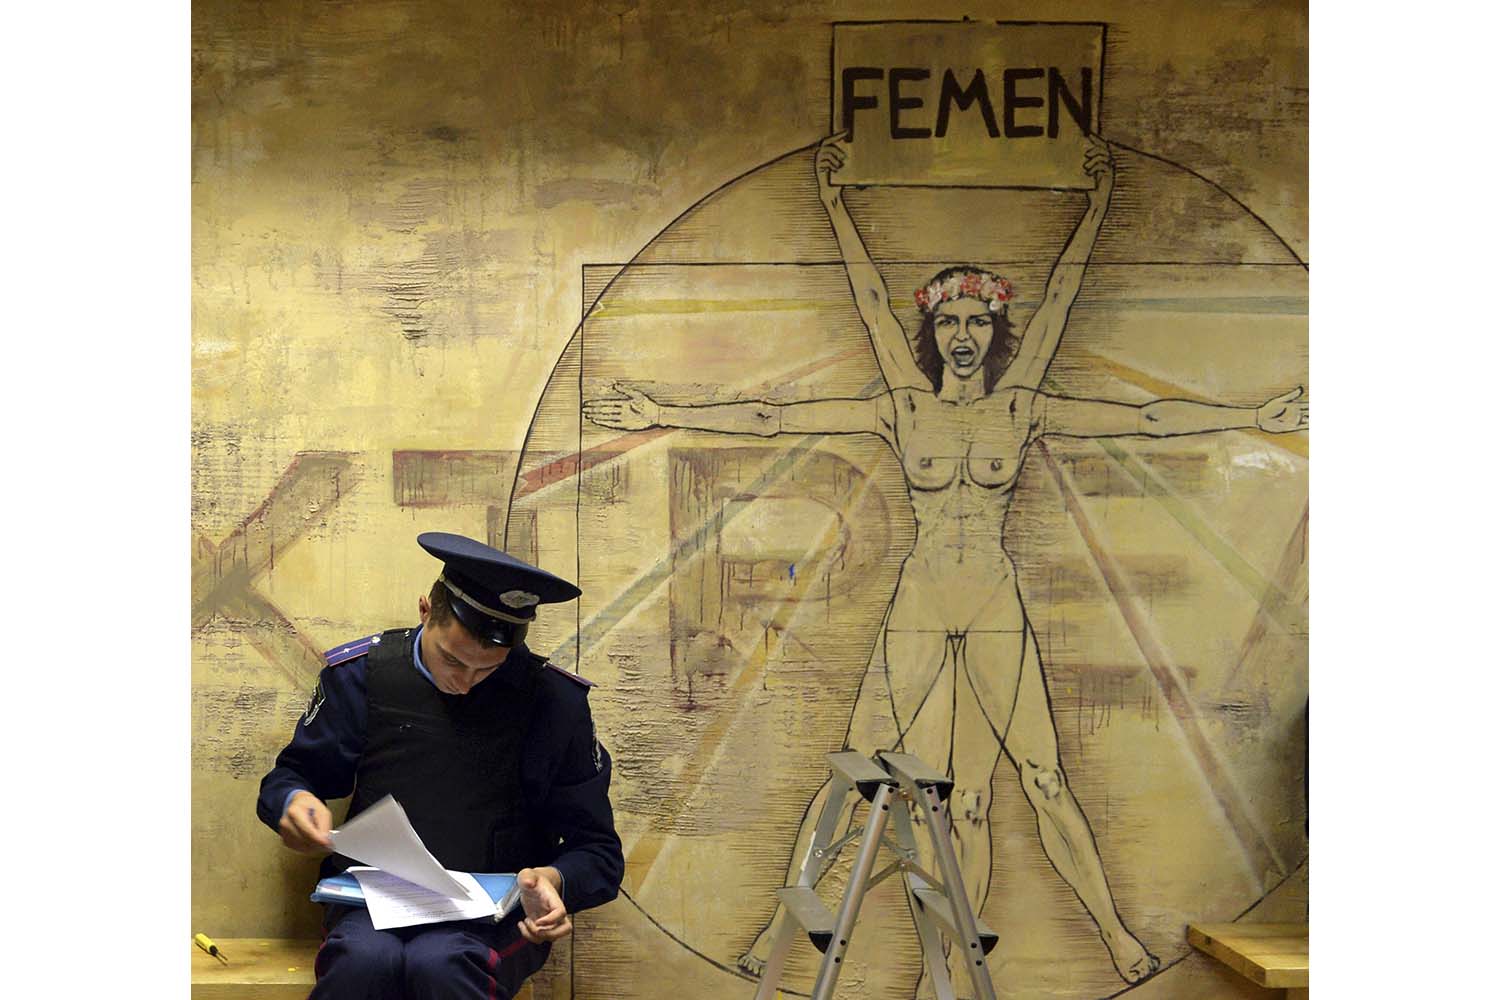 La policía ucraniana dice haber encontrado una pistola y una granada en la sede de Femen